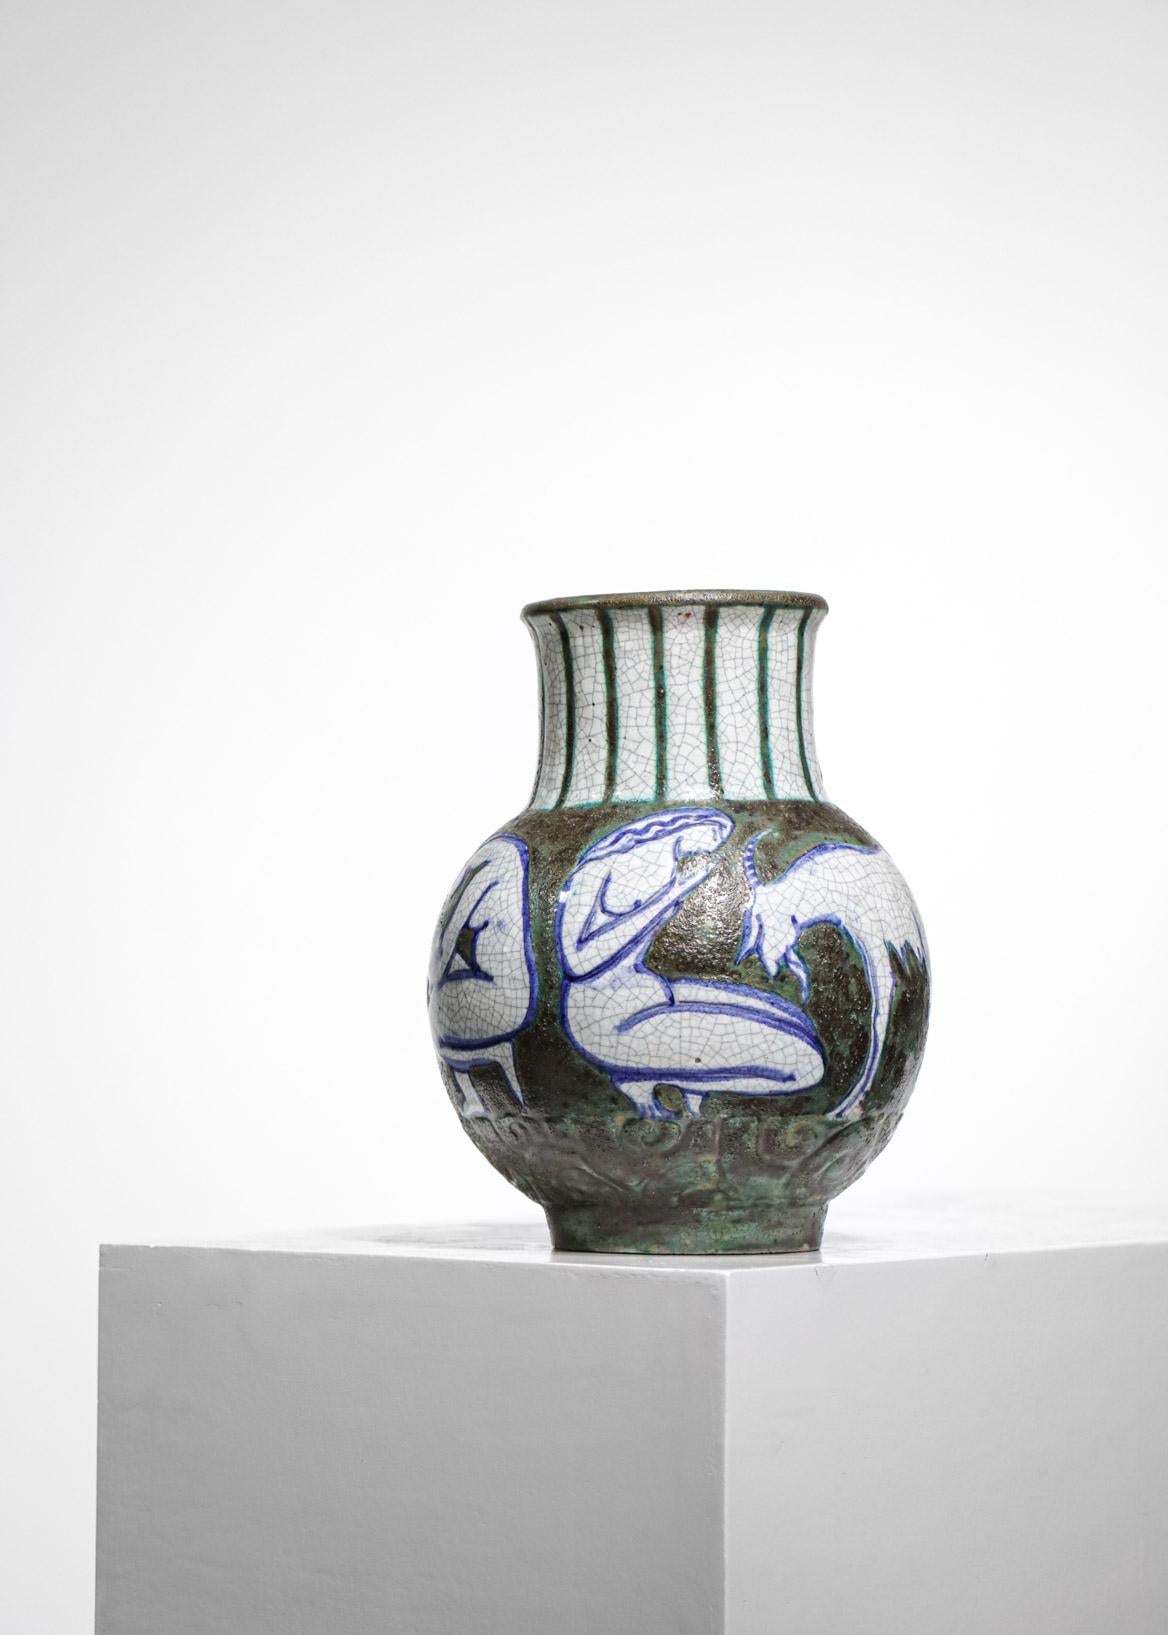 Keramikvase aus den 1950er Jahren von dem französischen Keramiker Edouard Cazaux. Sehr schöne Zeichnungen des Künstlers von Frauen und Ziegen rund um die Vase, die einen Eindruck von Bewegung vermitteln, Emaillierung in Grün-, Weiß- und Blautönen.